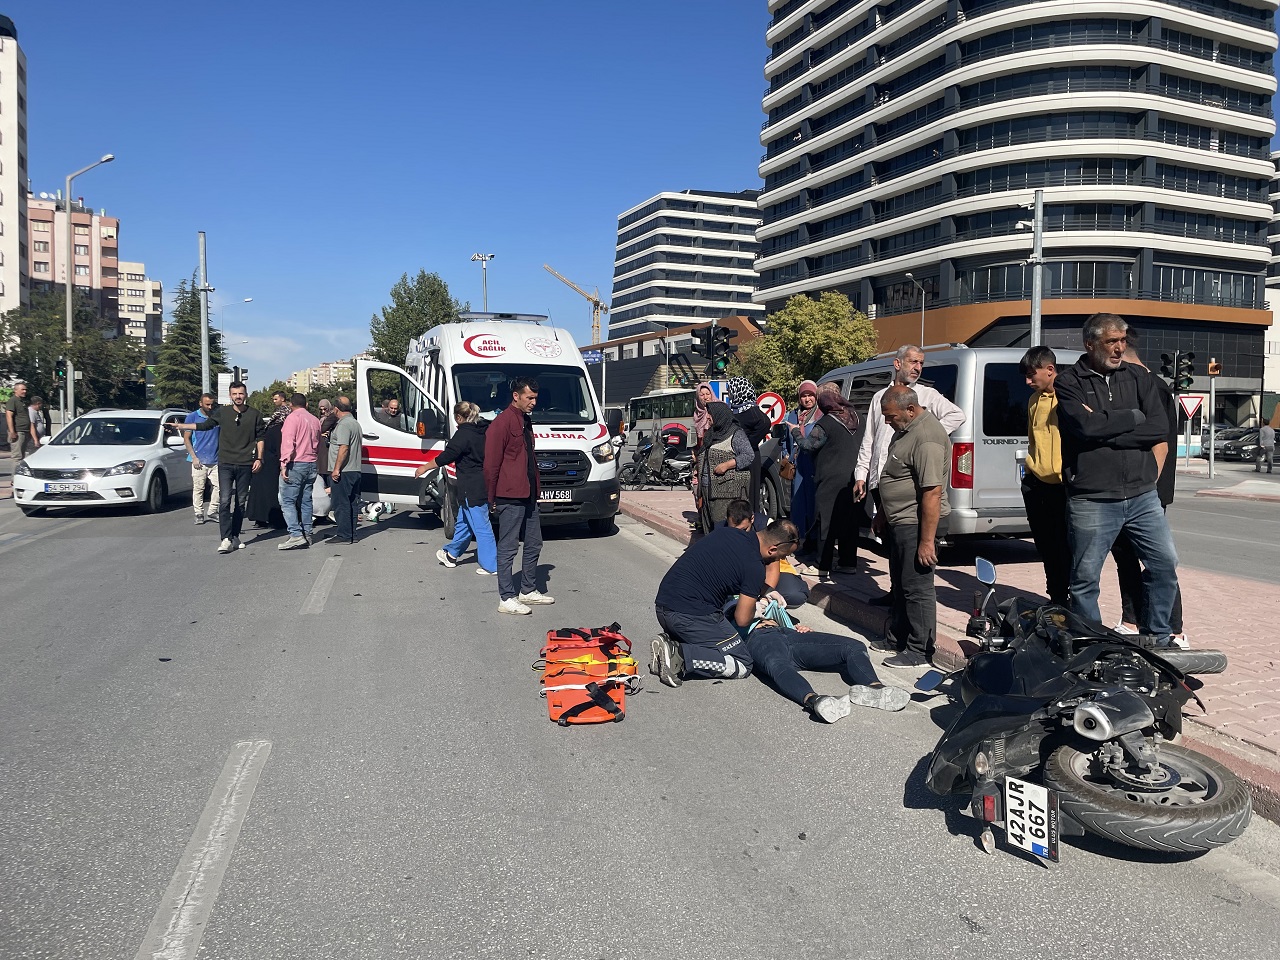 Konya'da çarpışan motosikletlerin sürücüleri yaralandı